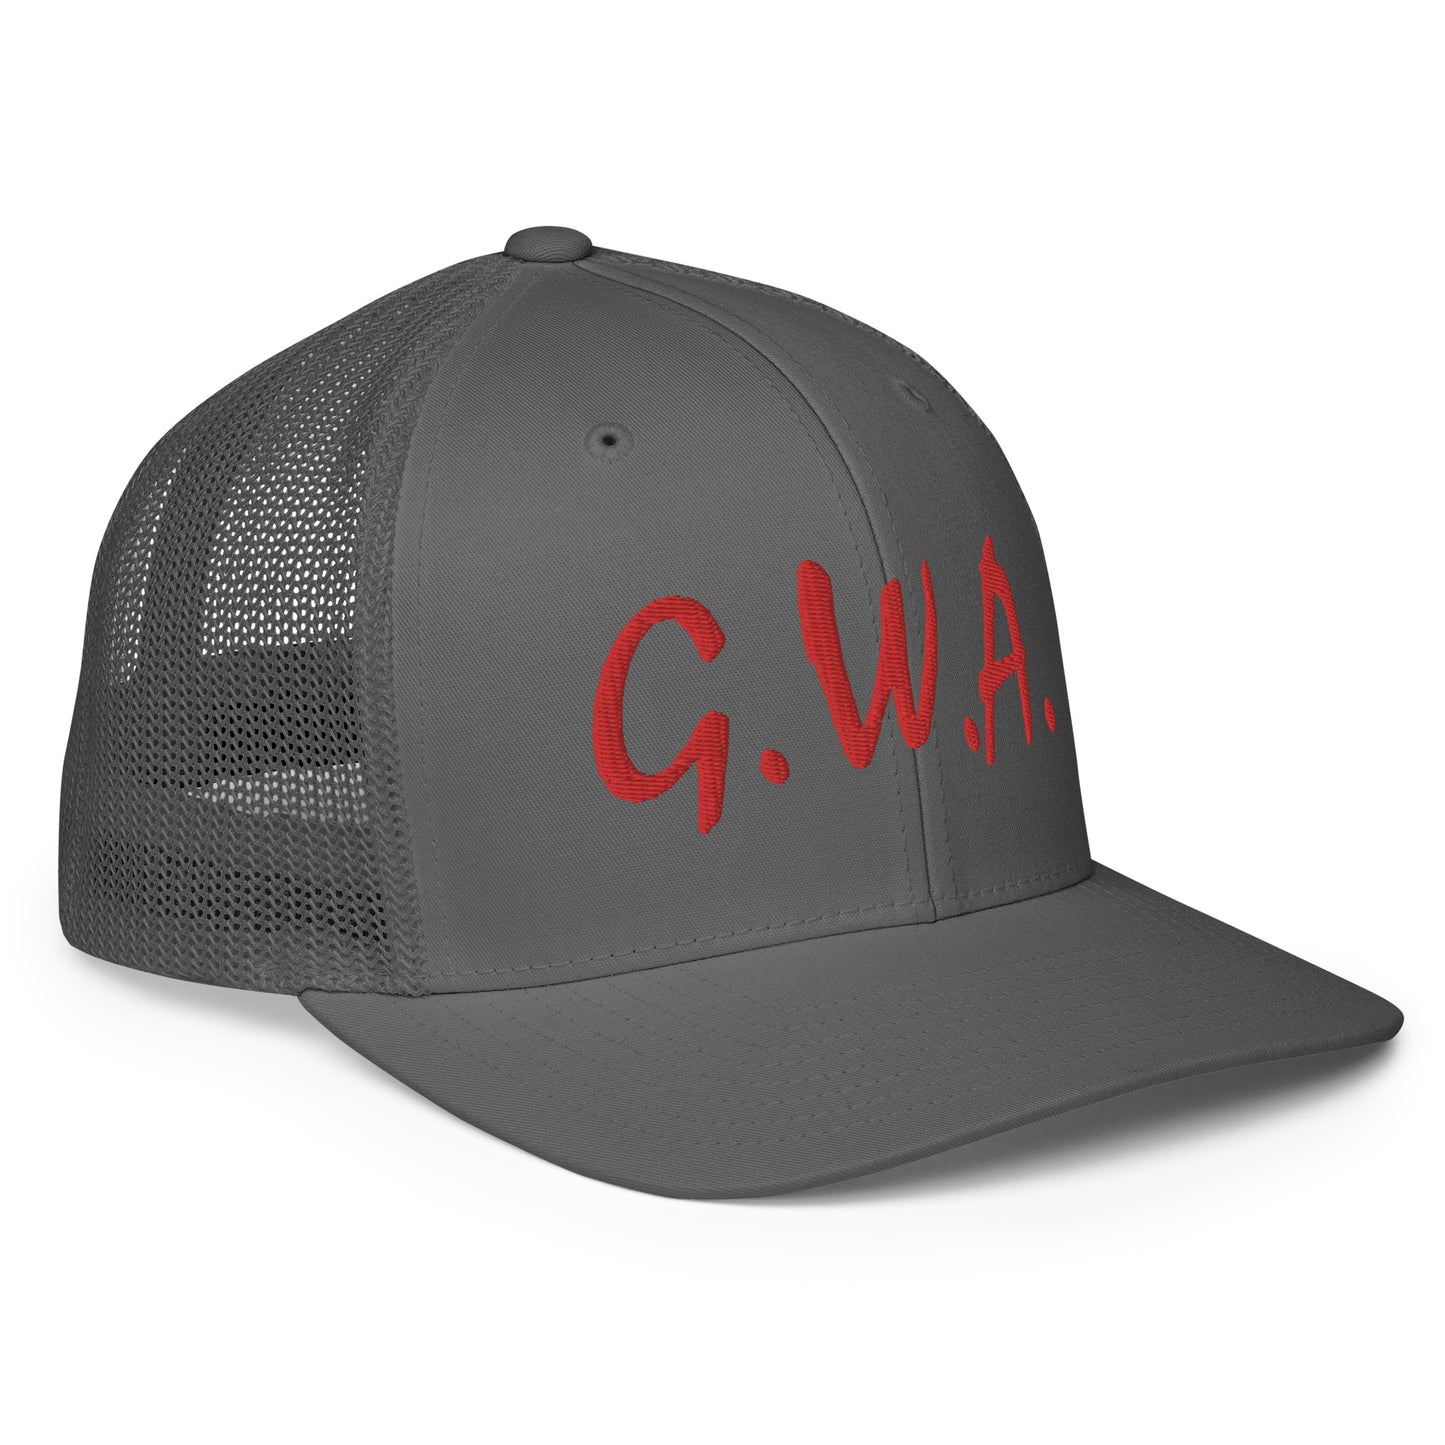 G.W.A. FLEX FIT HAT